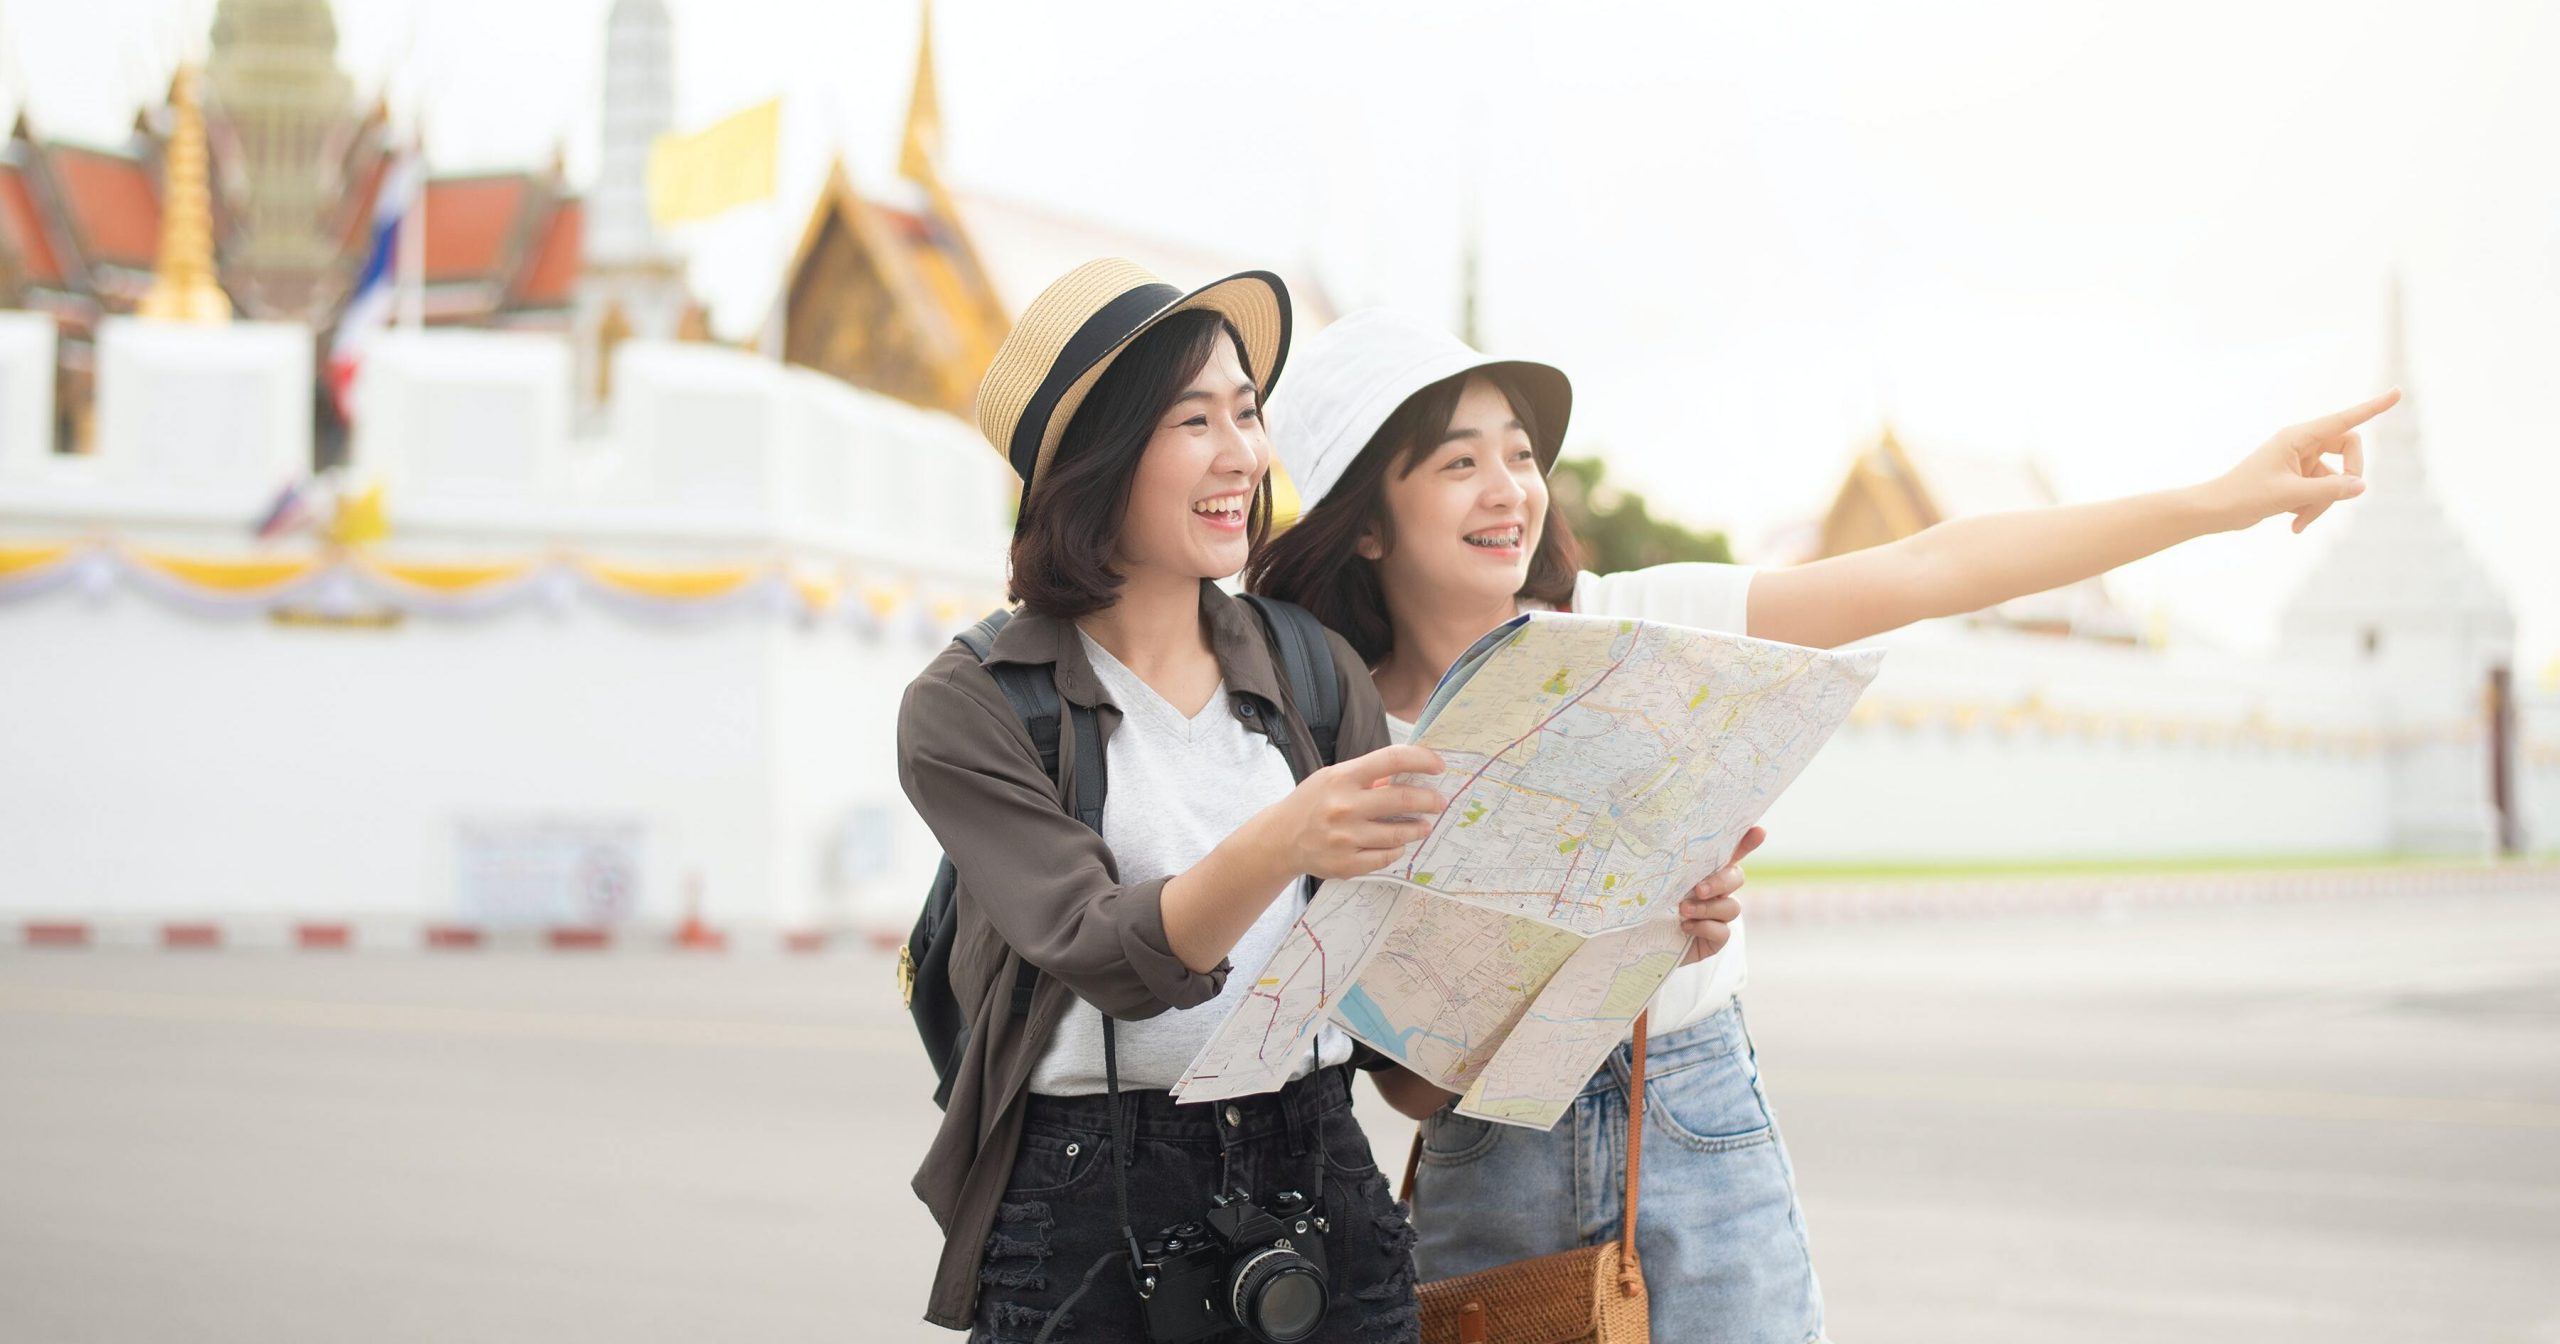 Incoming asiatico: conferme e nuovi assetti del mercato turistico